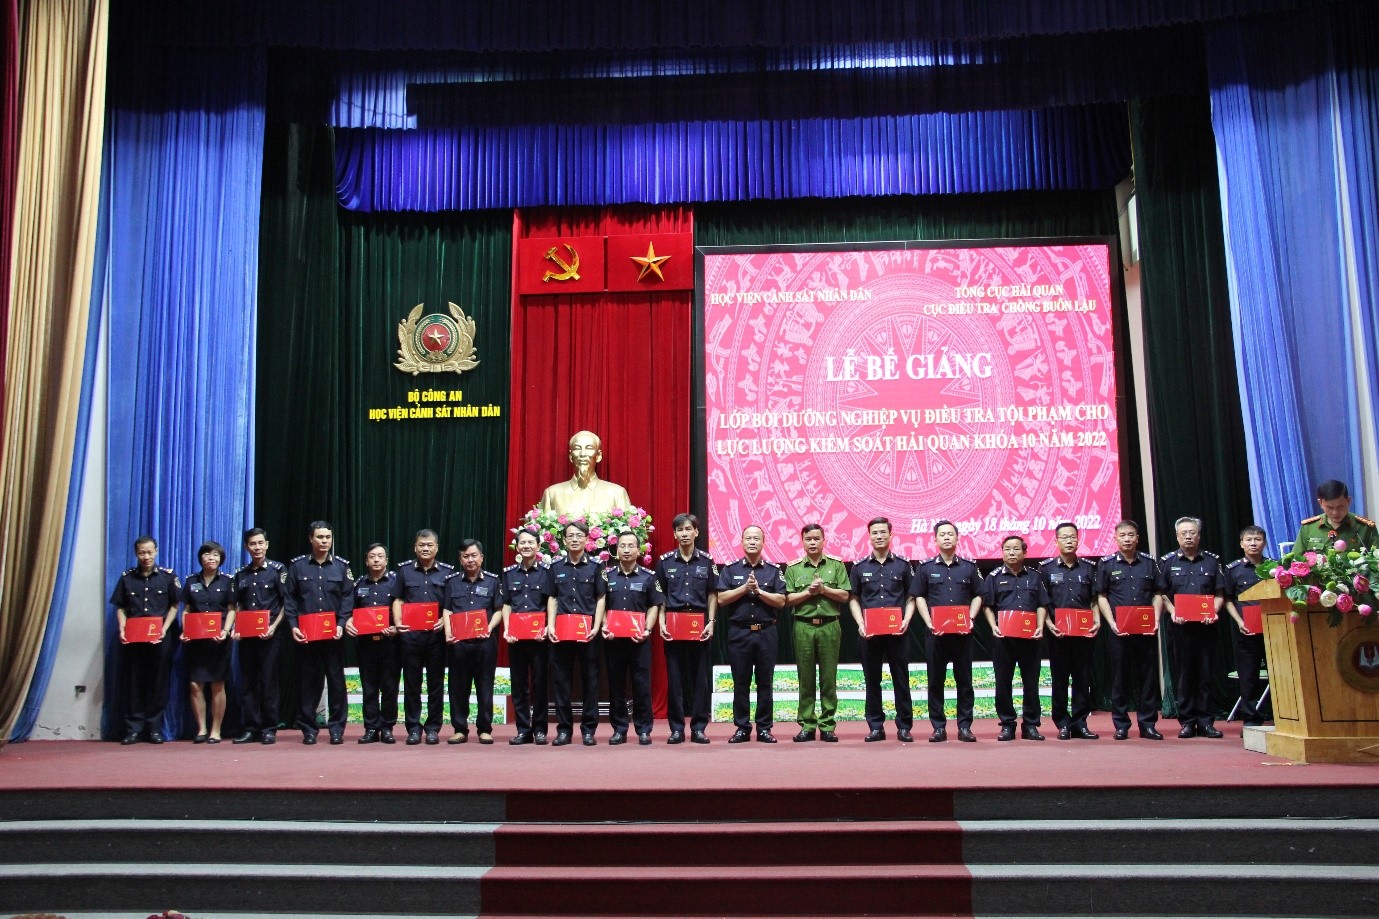 Thiếu tướng, GS. TS Nguyễn Đắc Hoan và đồng chí Nguyễn Văn Hoàn trao tặng giấy khen và chứng chỉ hoàn thành khóa học cho các học viên